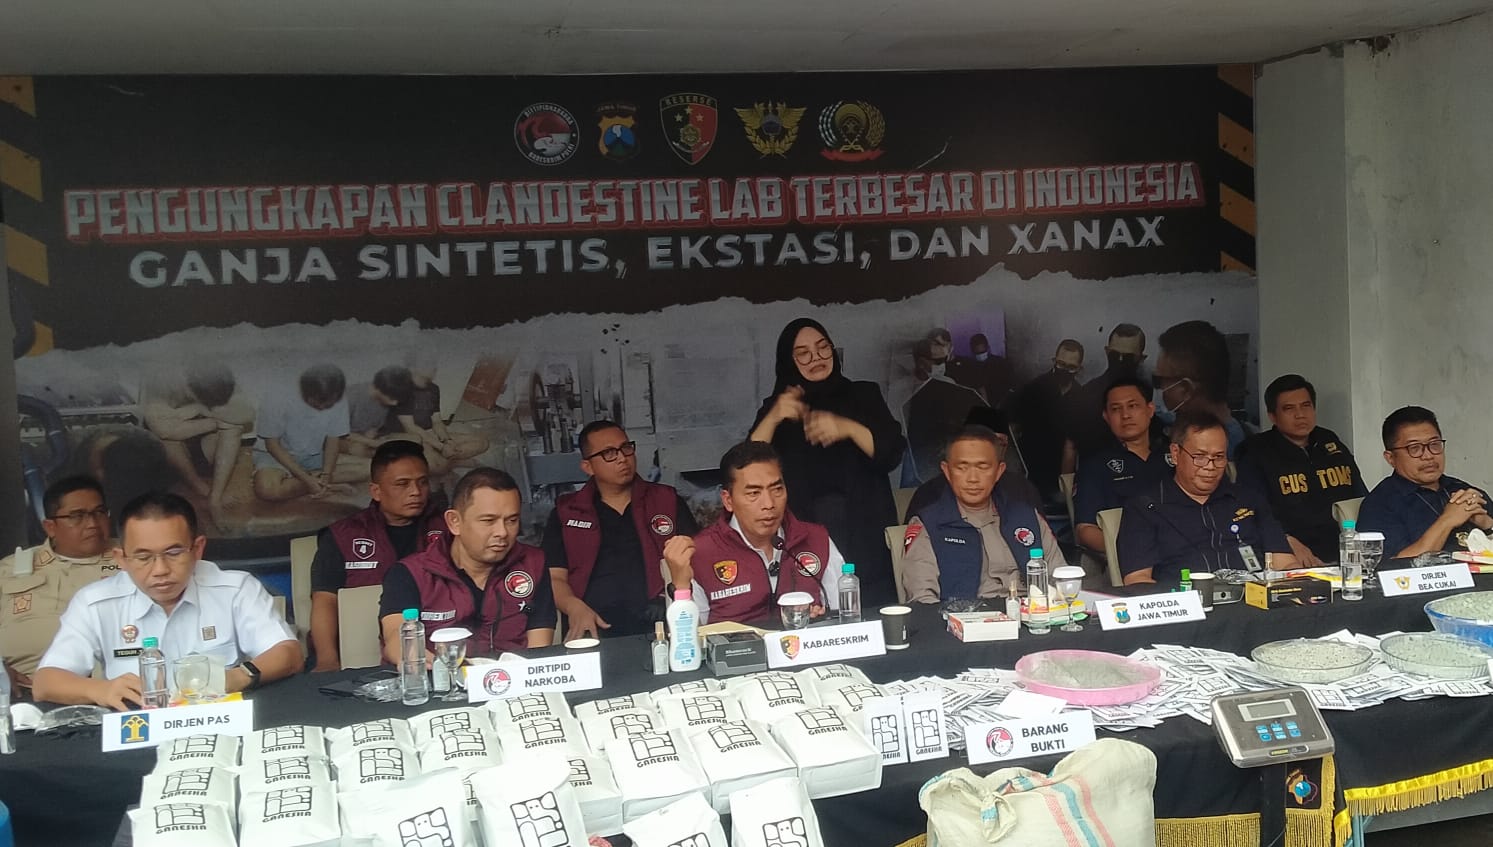 Hasilkan Sinte, Pabrik Narkoba di Malang Terbesar di Indonesia